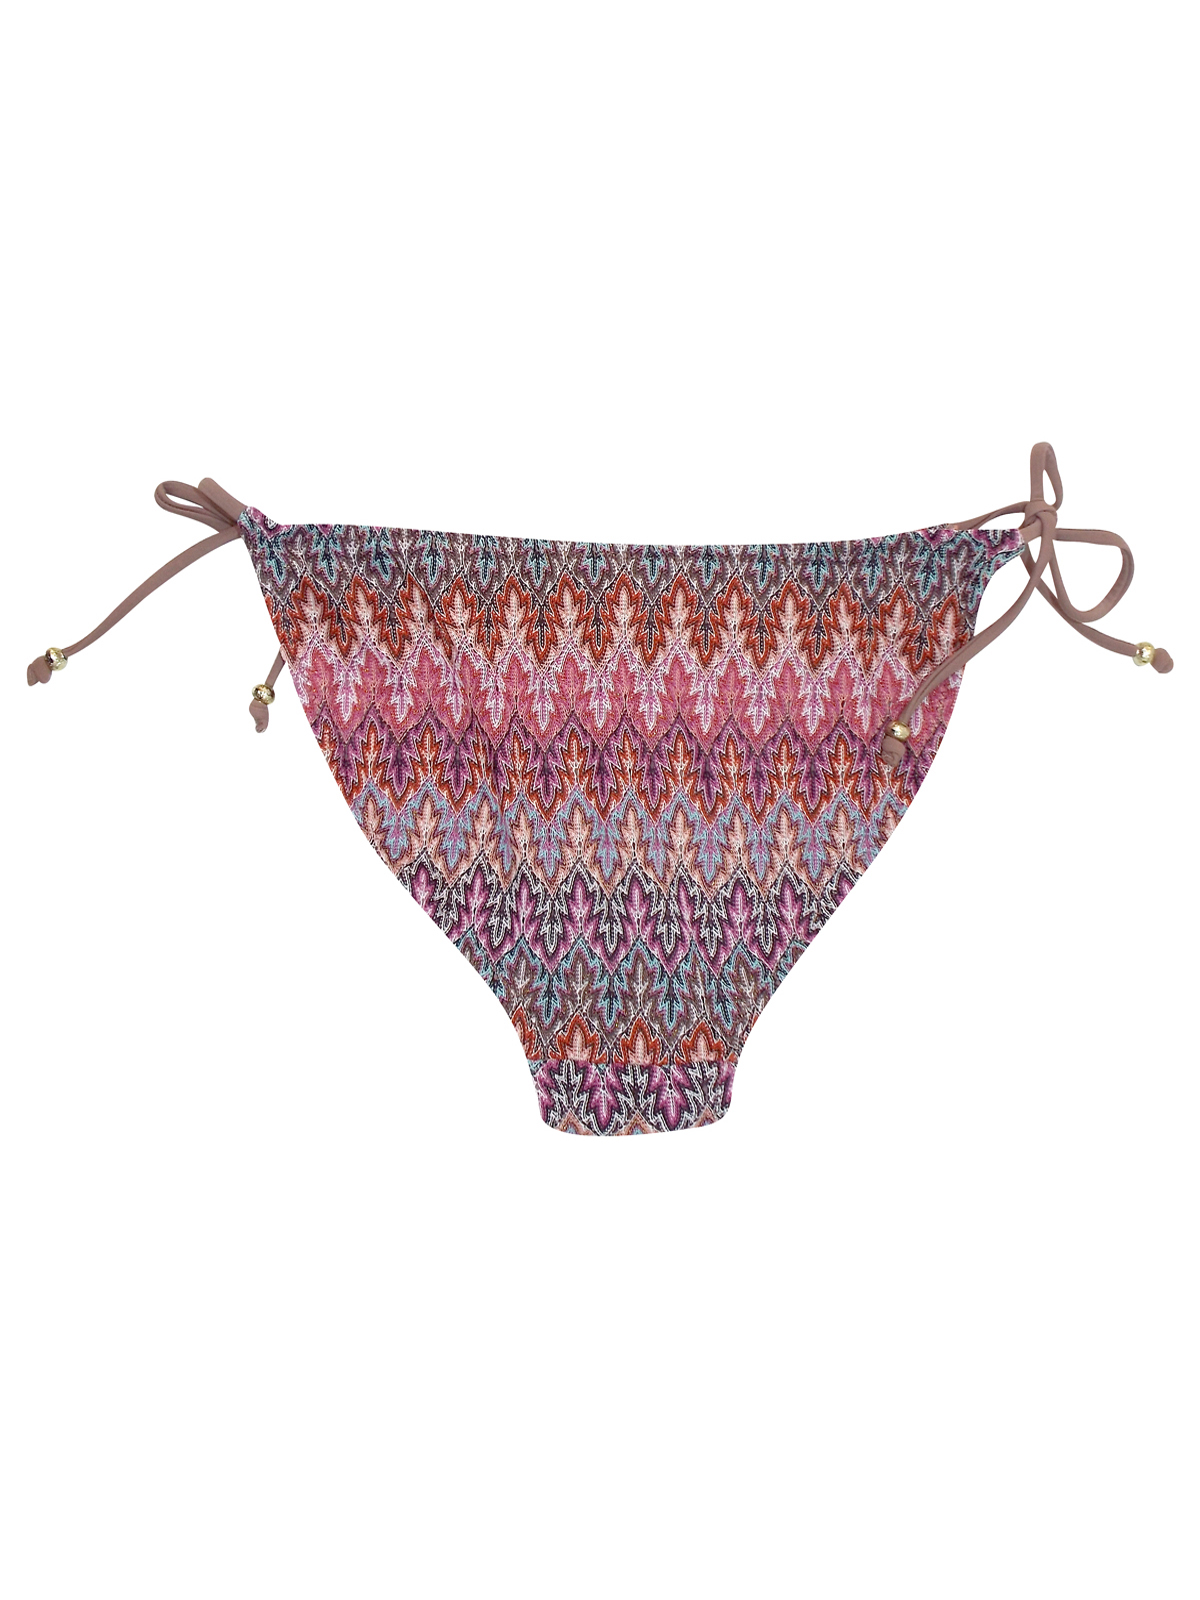 Accesorize RUSTIC Crochet Knit Tie Side Bikini Bottoms - Size 8 to 18